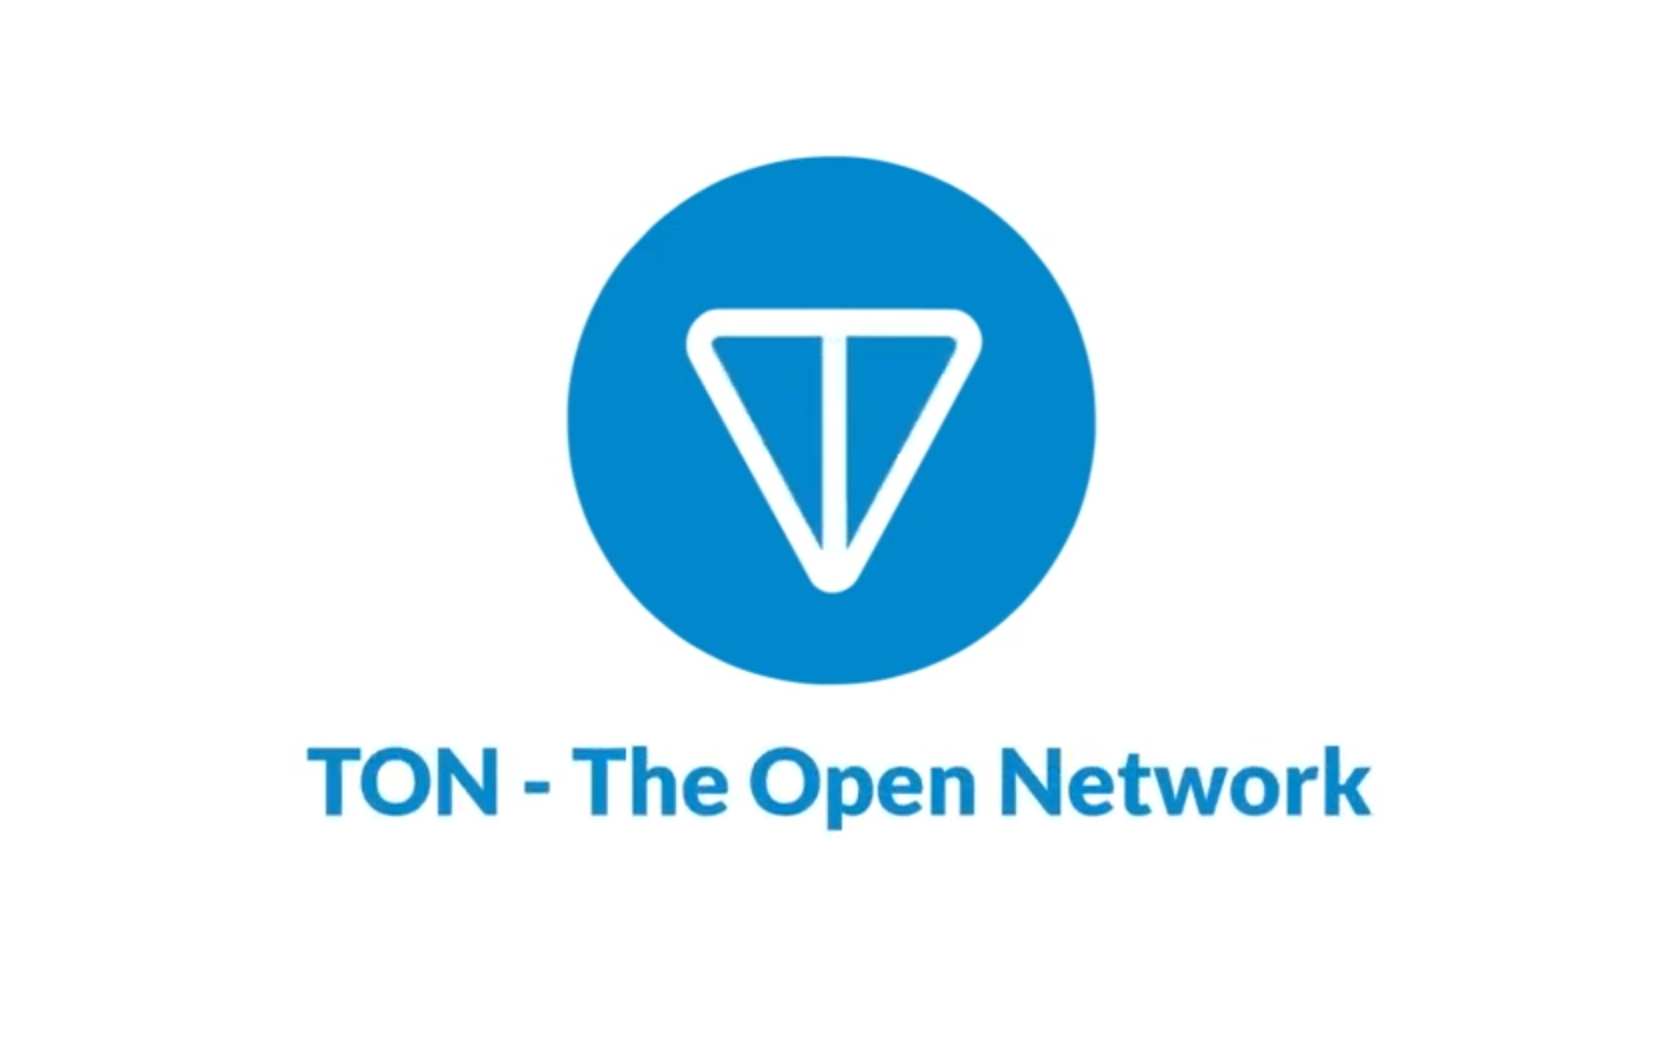 The open league ton. Ton в телеграмме. Лого the open Network. The open Network ton. Telegram open Network ton.